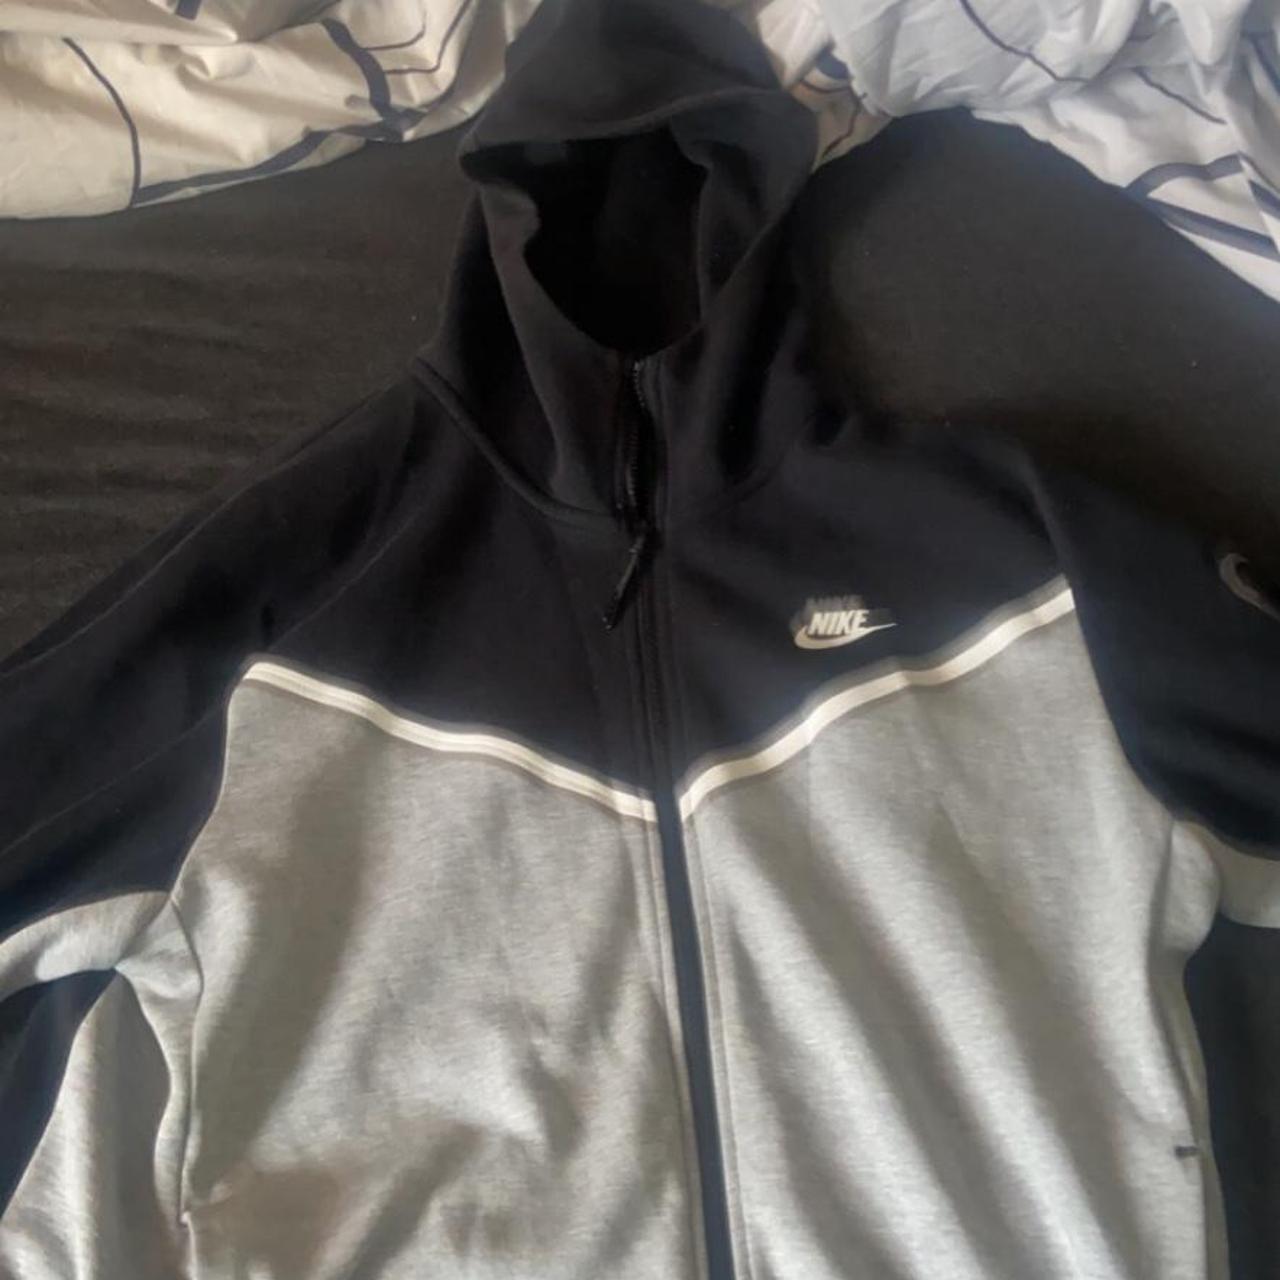 Nike tech fleece hoodie grey & black large #nike... - Depop